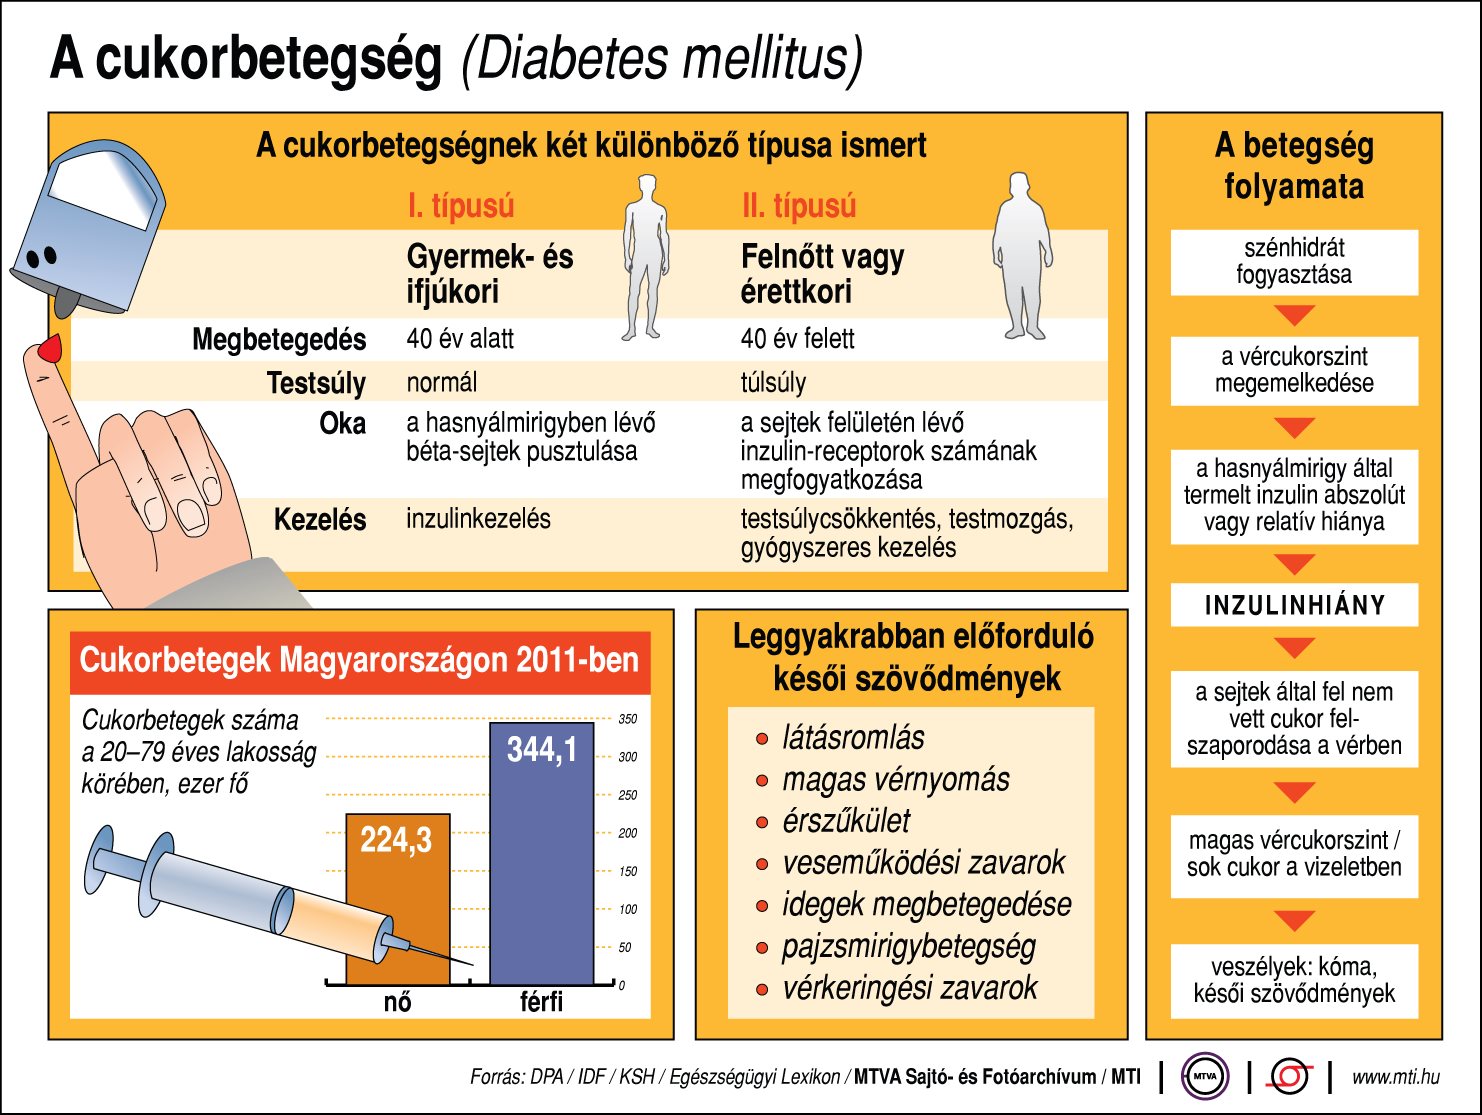 Metabolikus sebészet Törökországban 1. és 2. típusú cukorbetegek számára